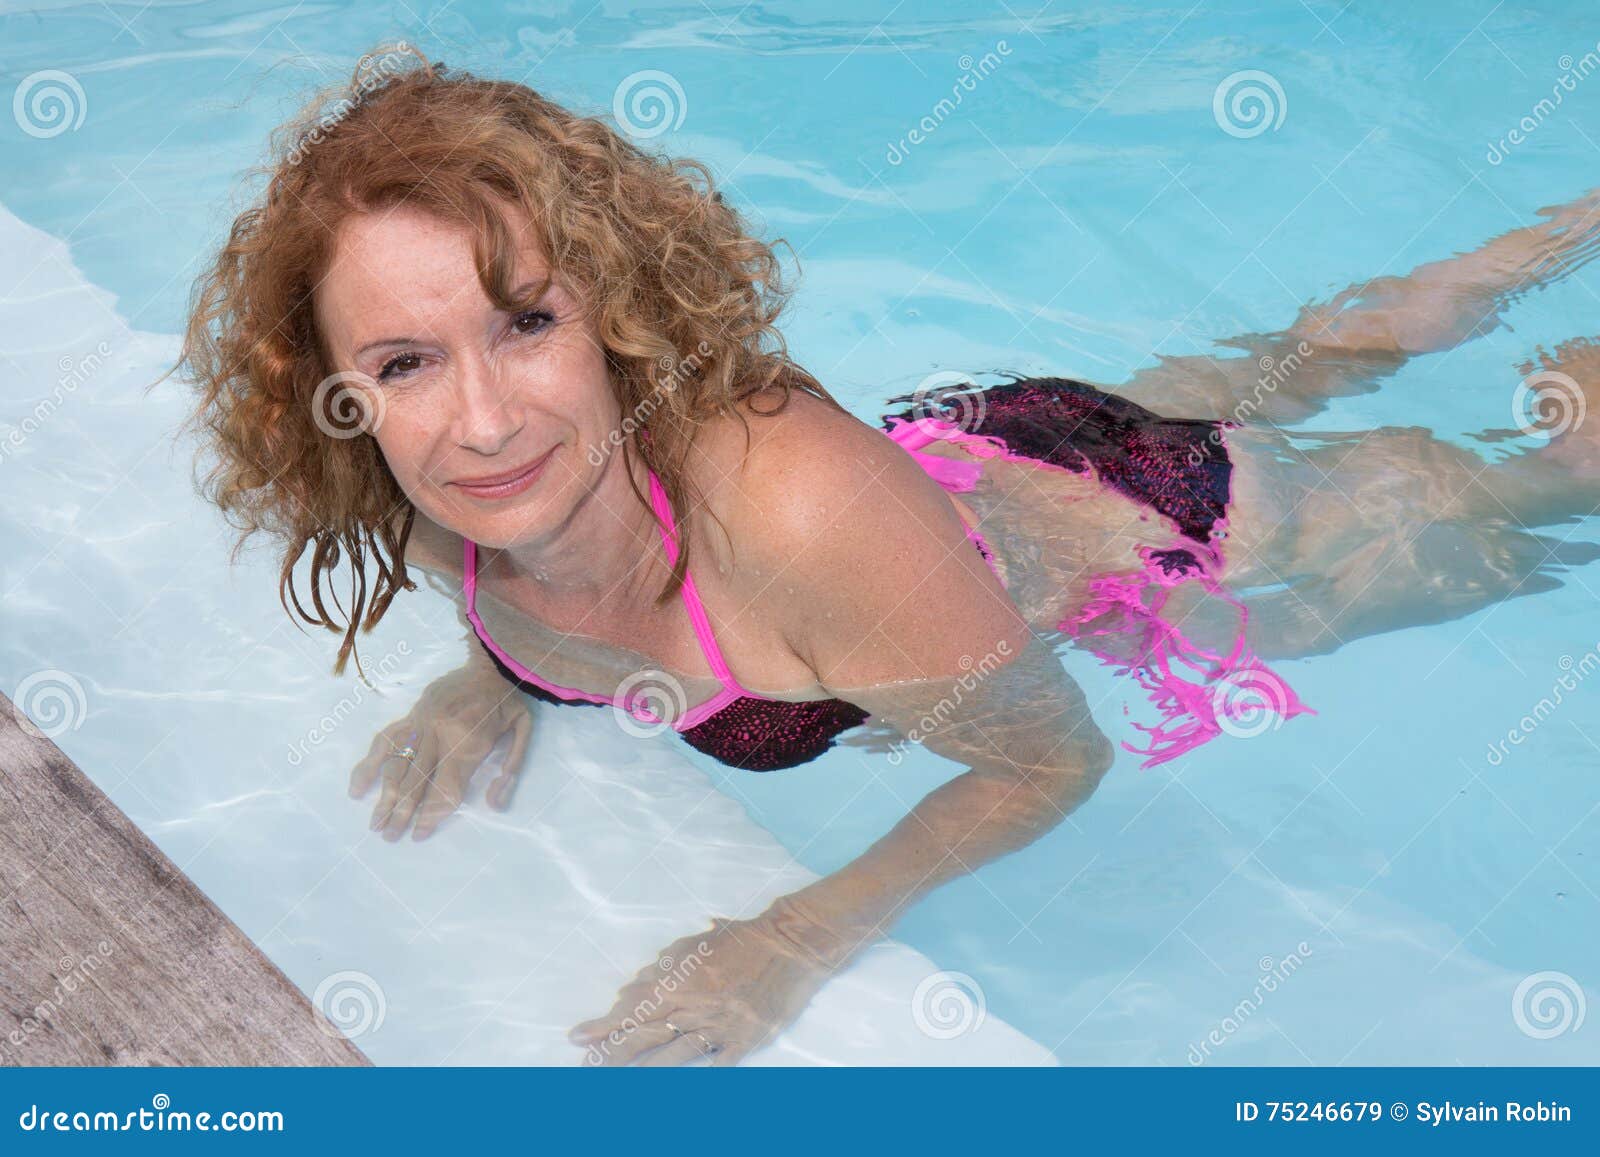 Preety Middle Aged Woman In Bikini In Pool Stock Image Image Of